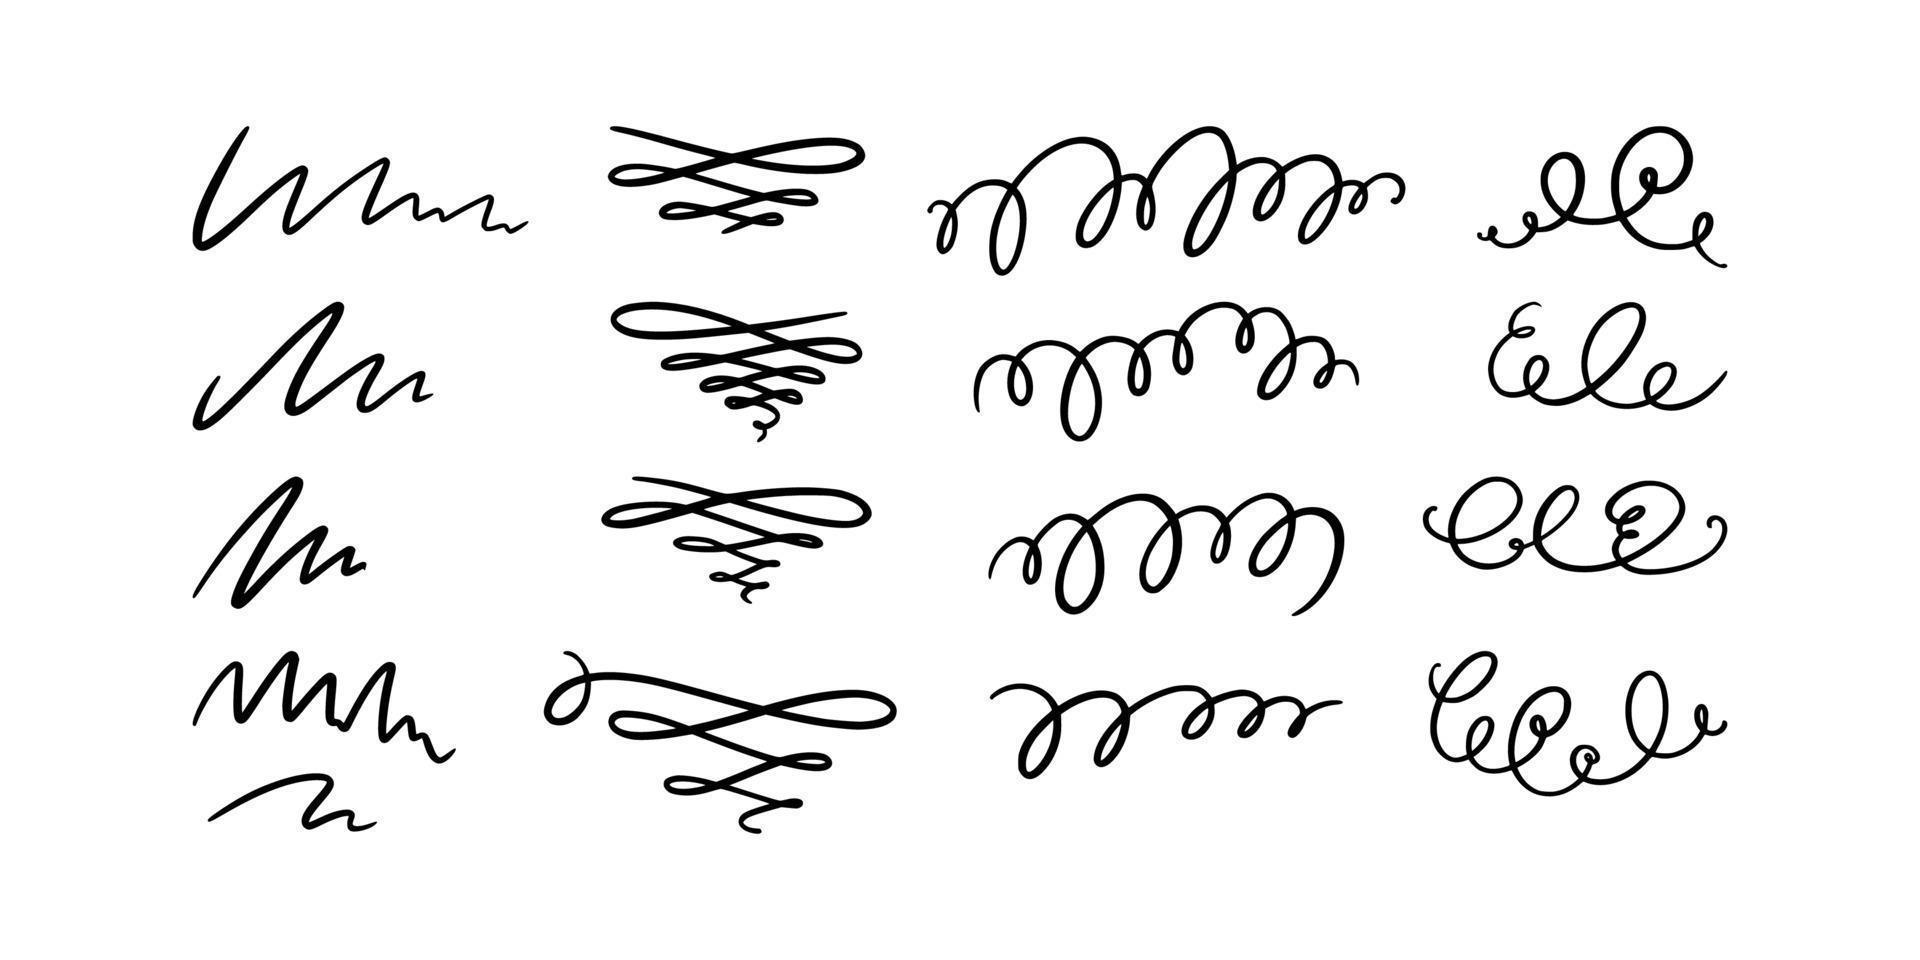 lignes de gribouillis et tourbillon. ensemble de tourbillons calligraphiques dessinés à la main. illustration vectorielle vecteur